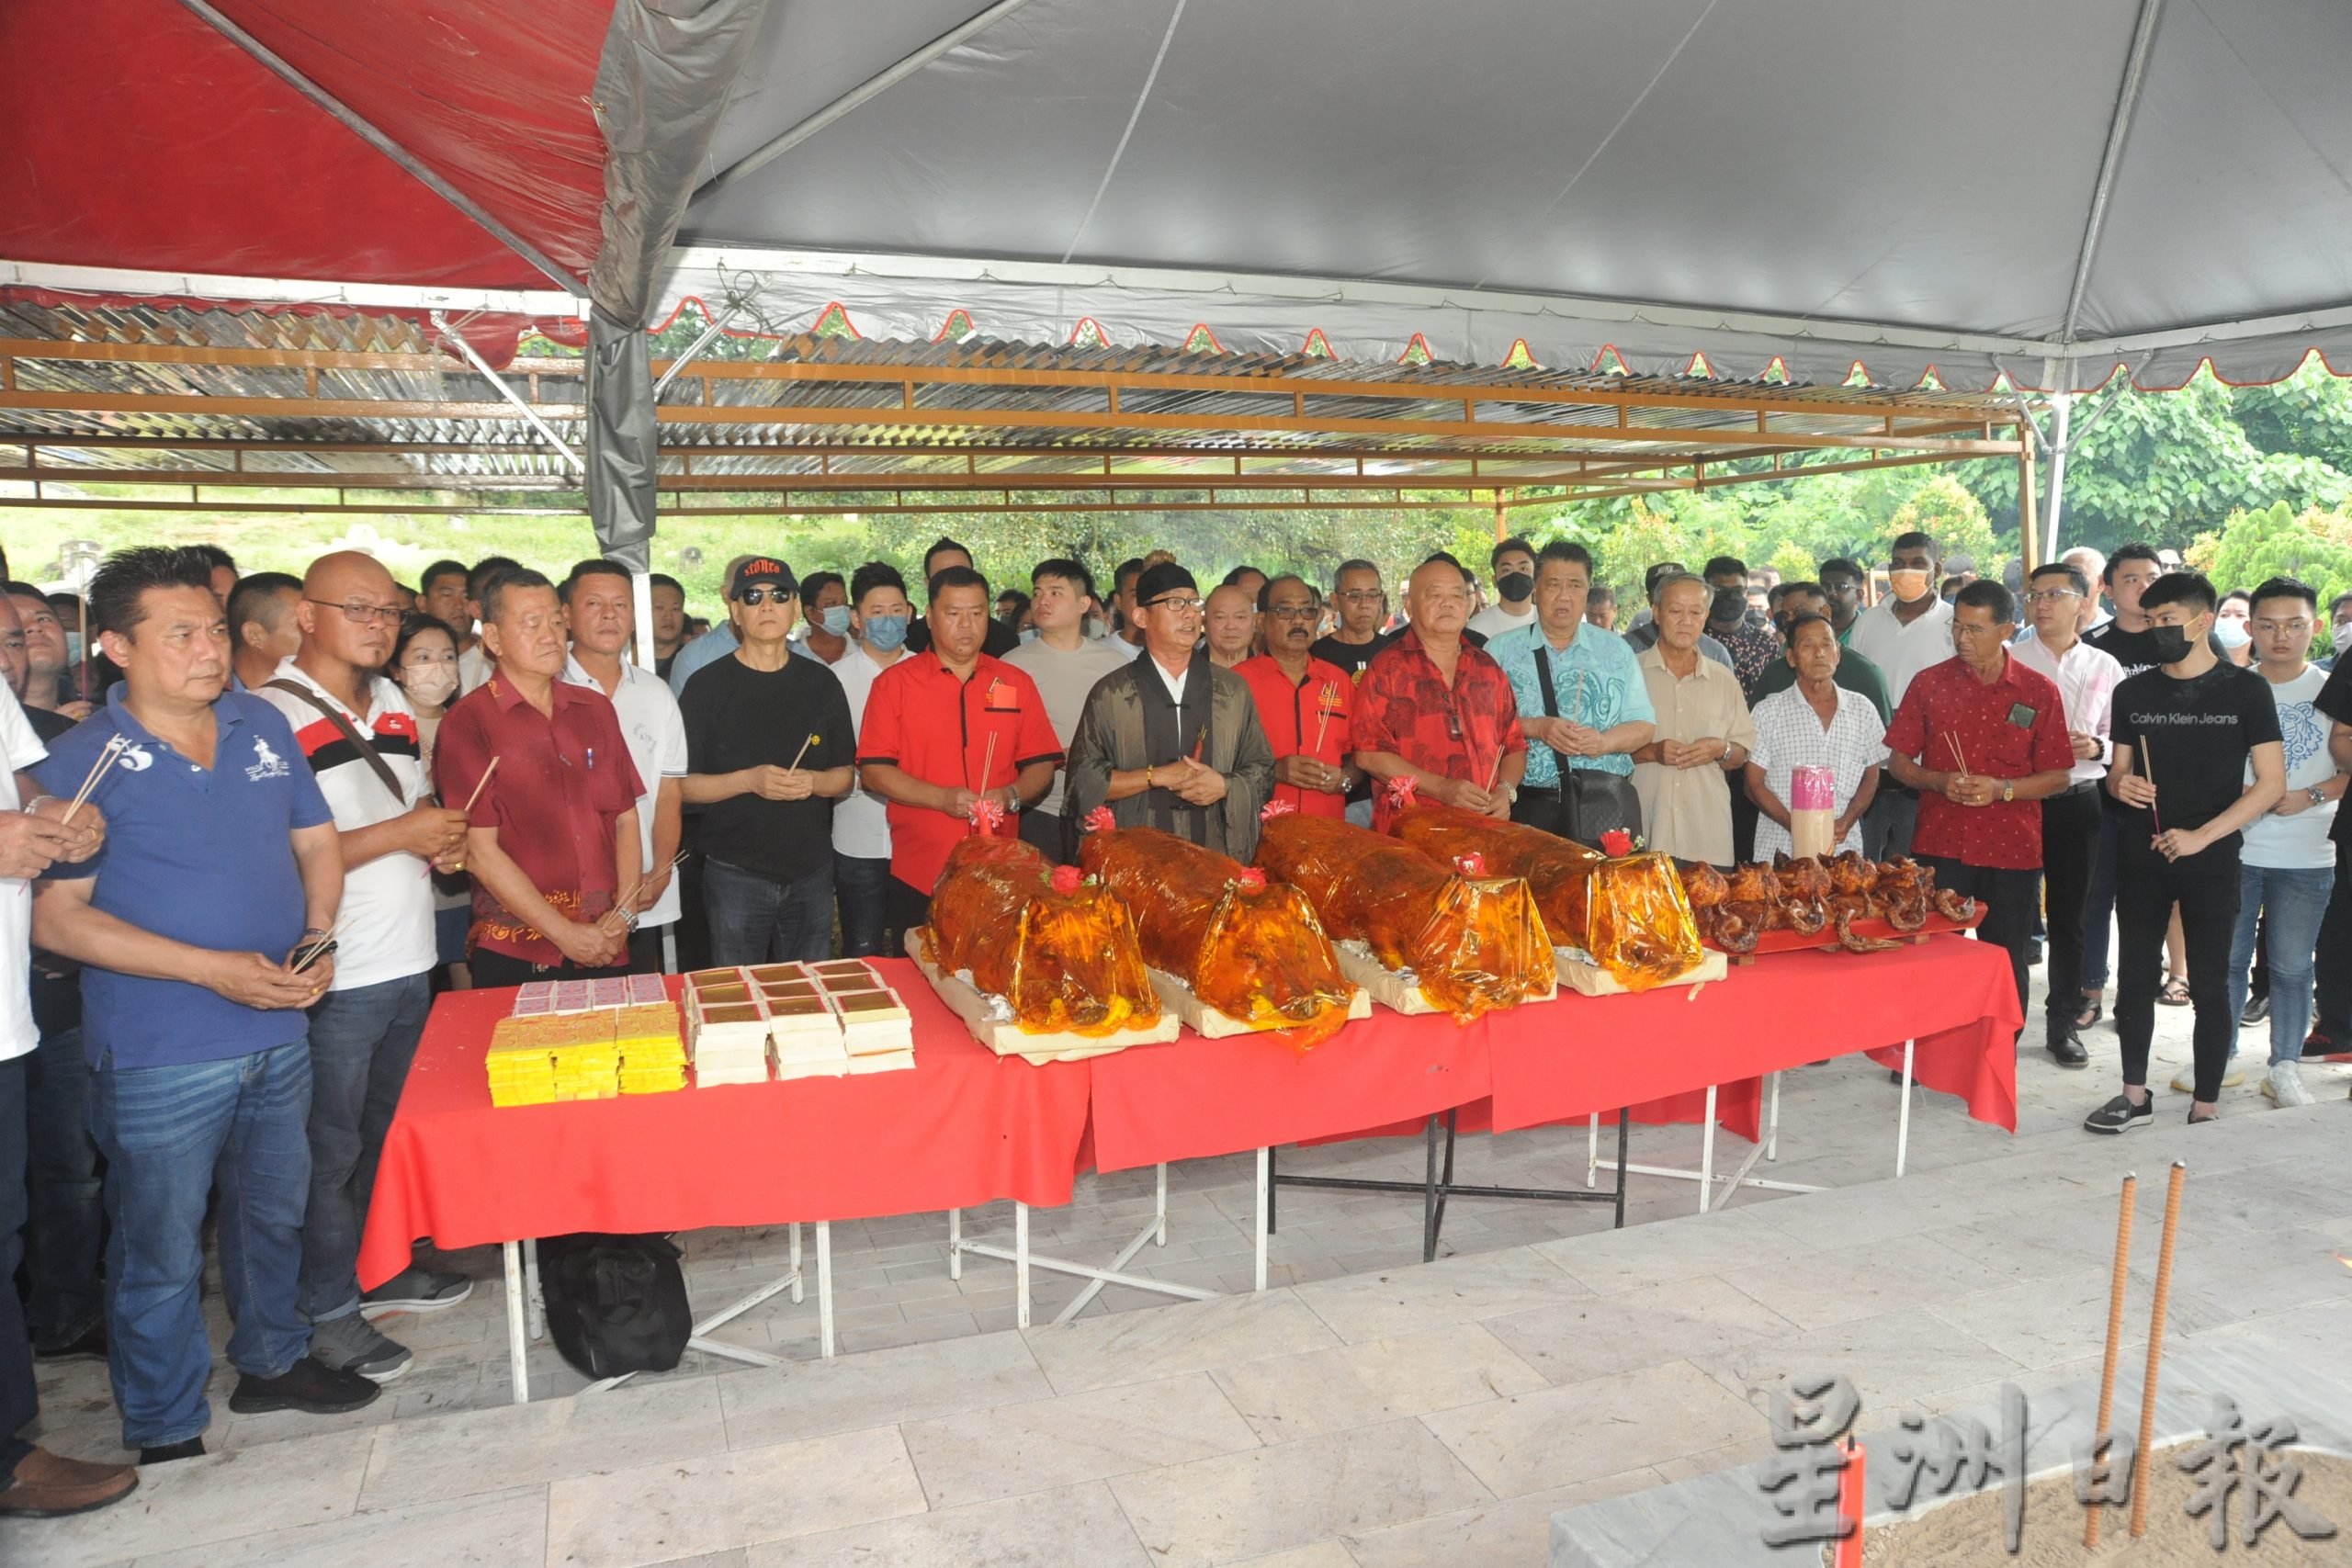 马来西亚义益福利总会总坟今日举行庄严的开幕仪式